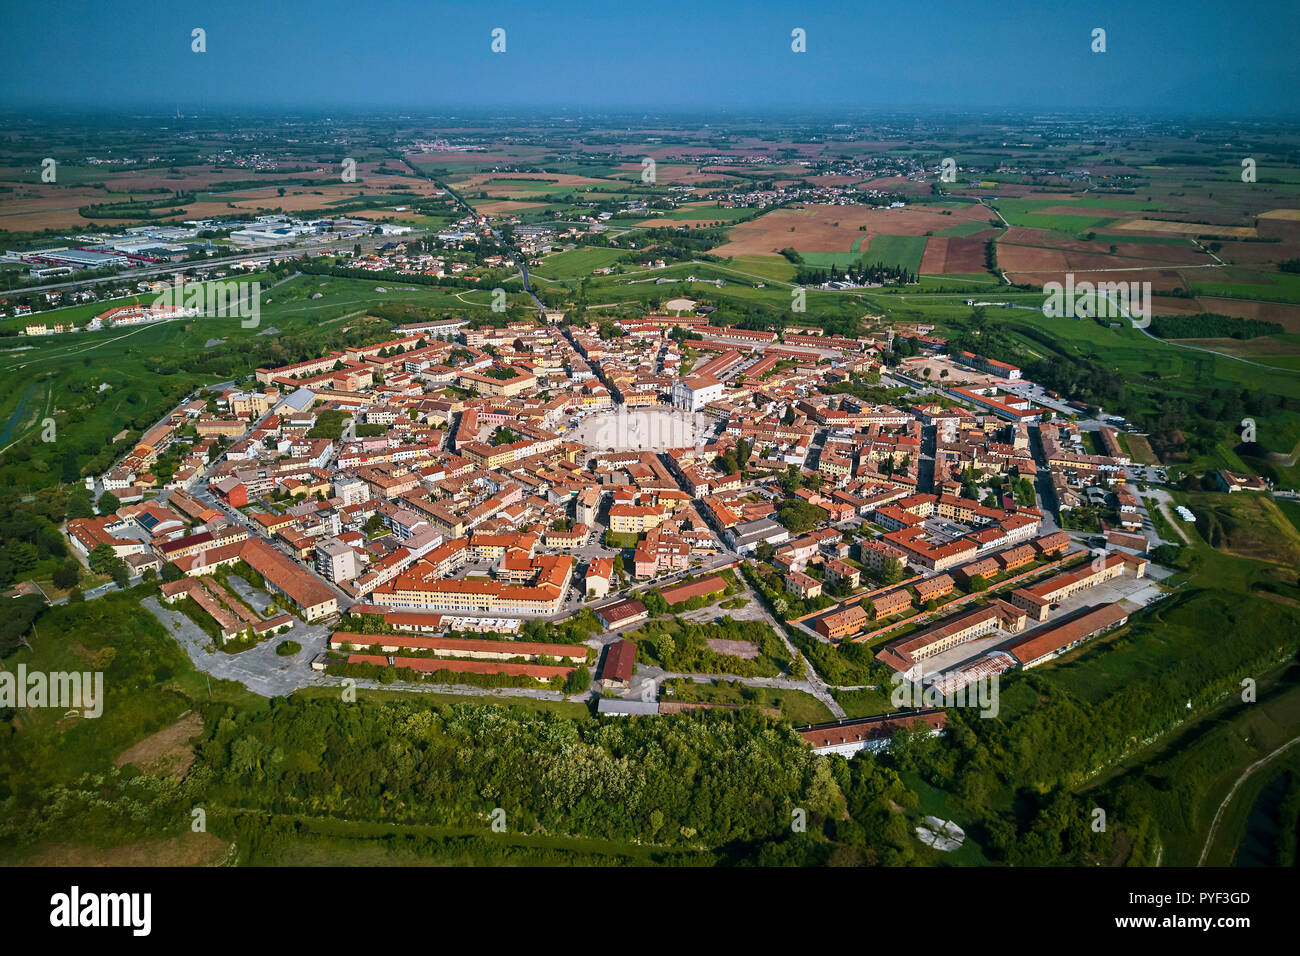 L'Italie, Frioul-Vénétie Julienne, Palmanova, patrimoine mondial de l'UNESCO, vue aérienne Banque D'Images